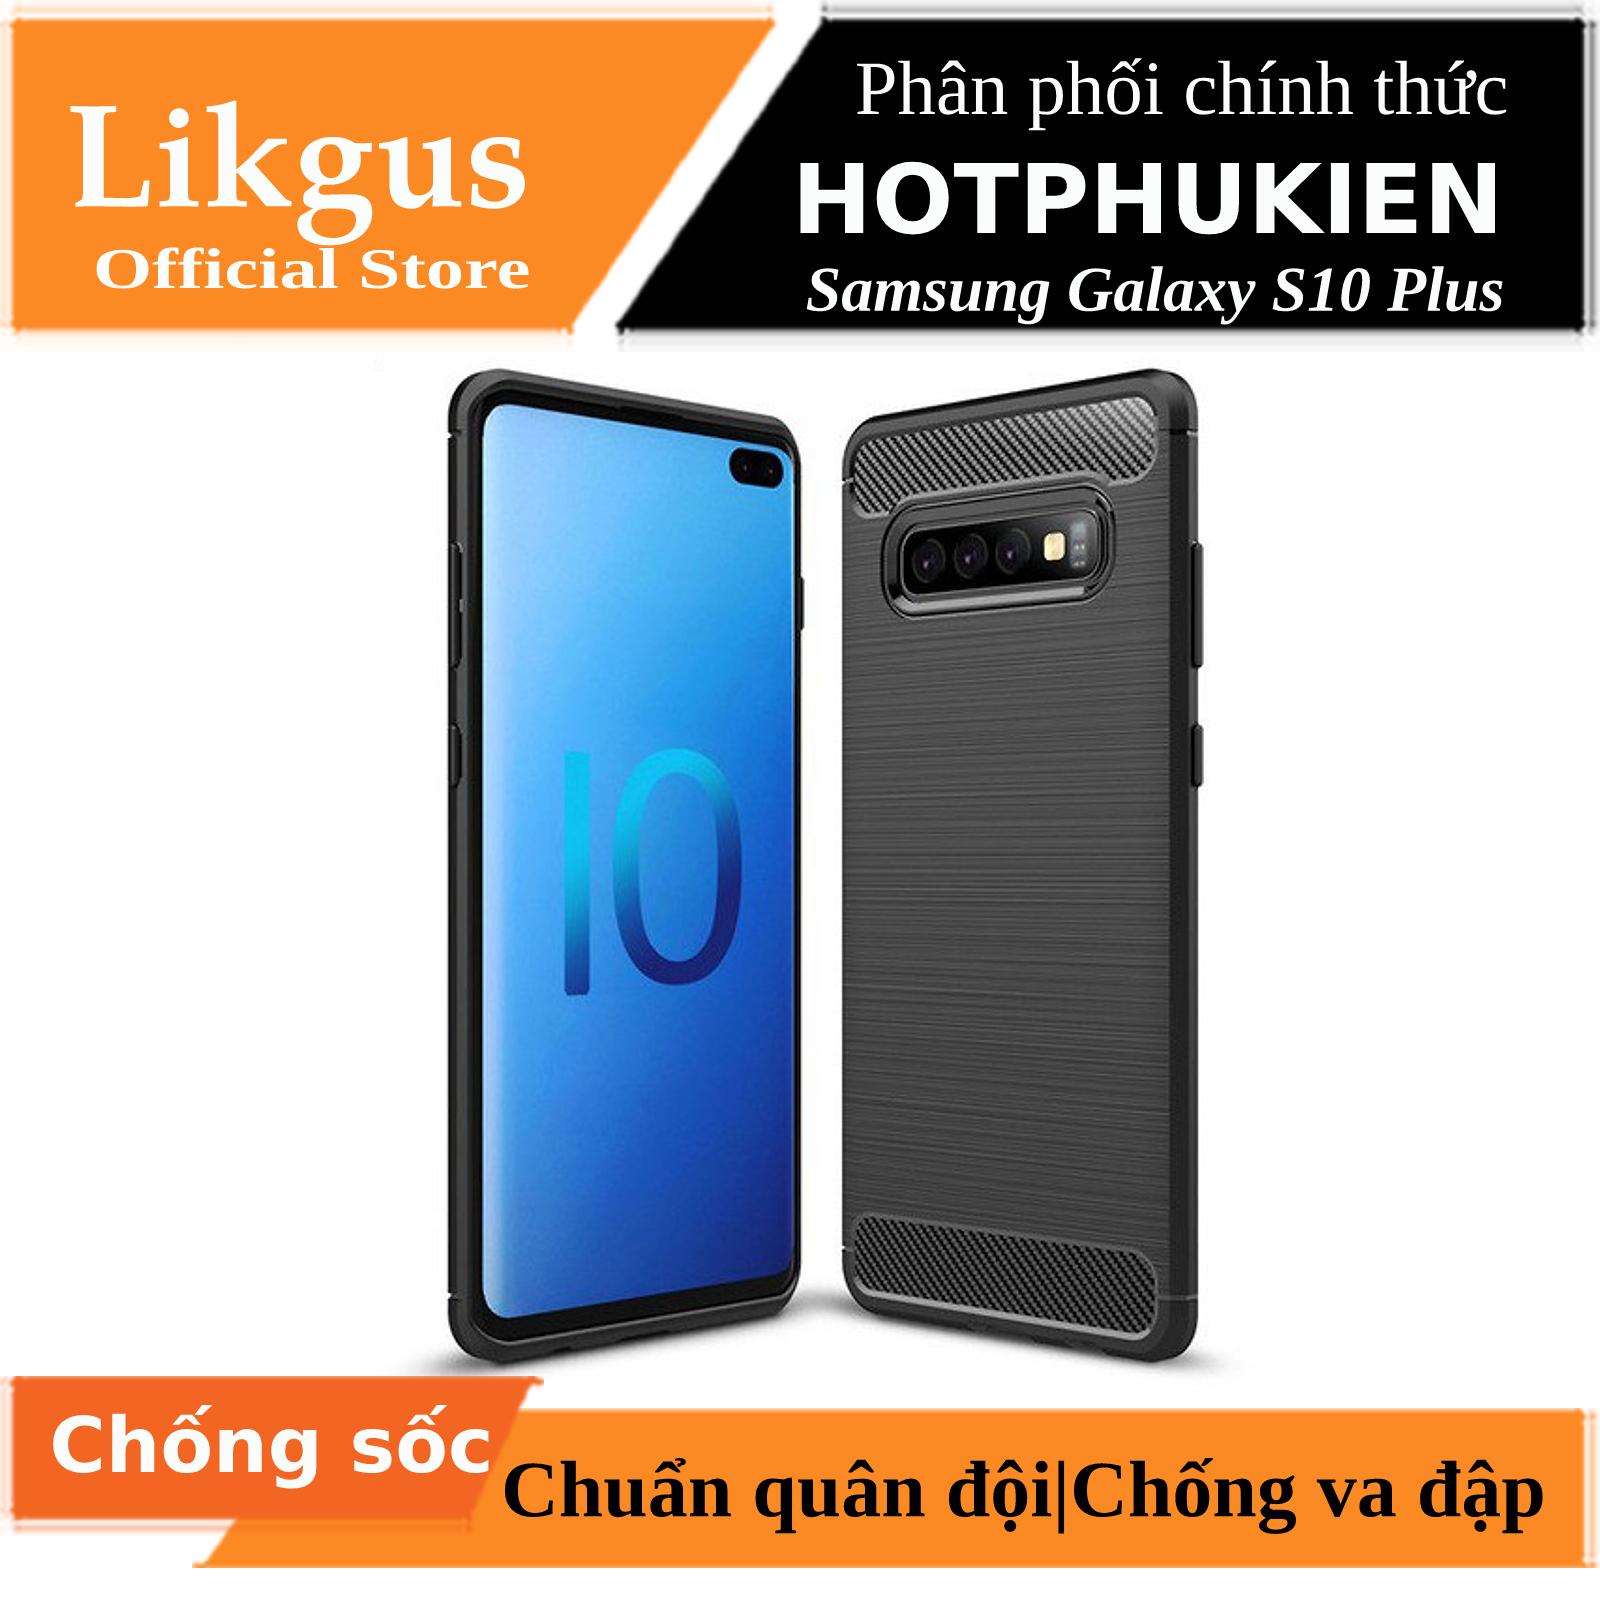 Ốp lưng chống sốc vân kim loại cho Samsung Galaxy S10 Plus hiệu Likgus